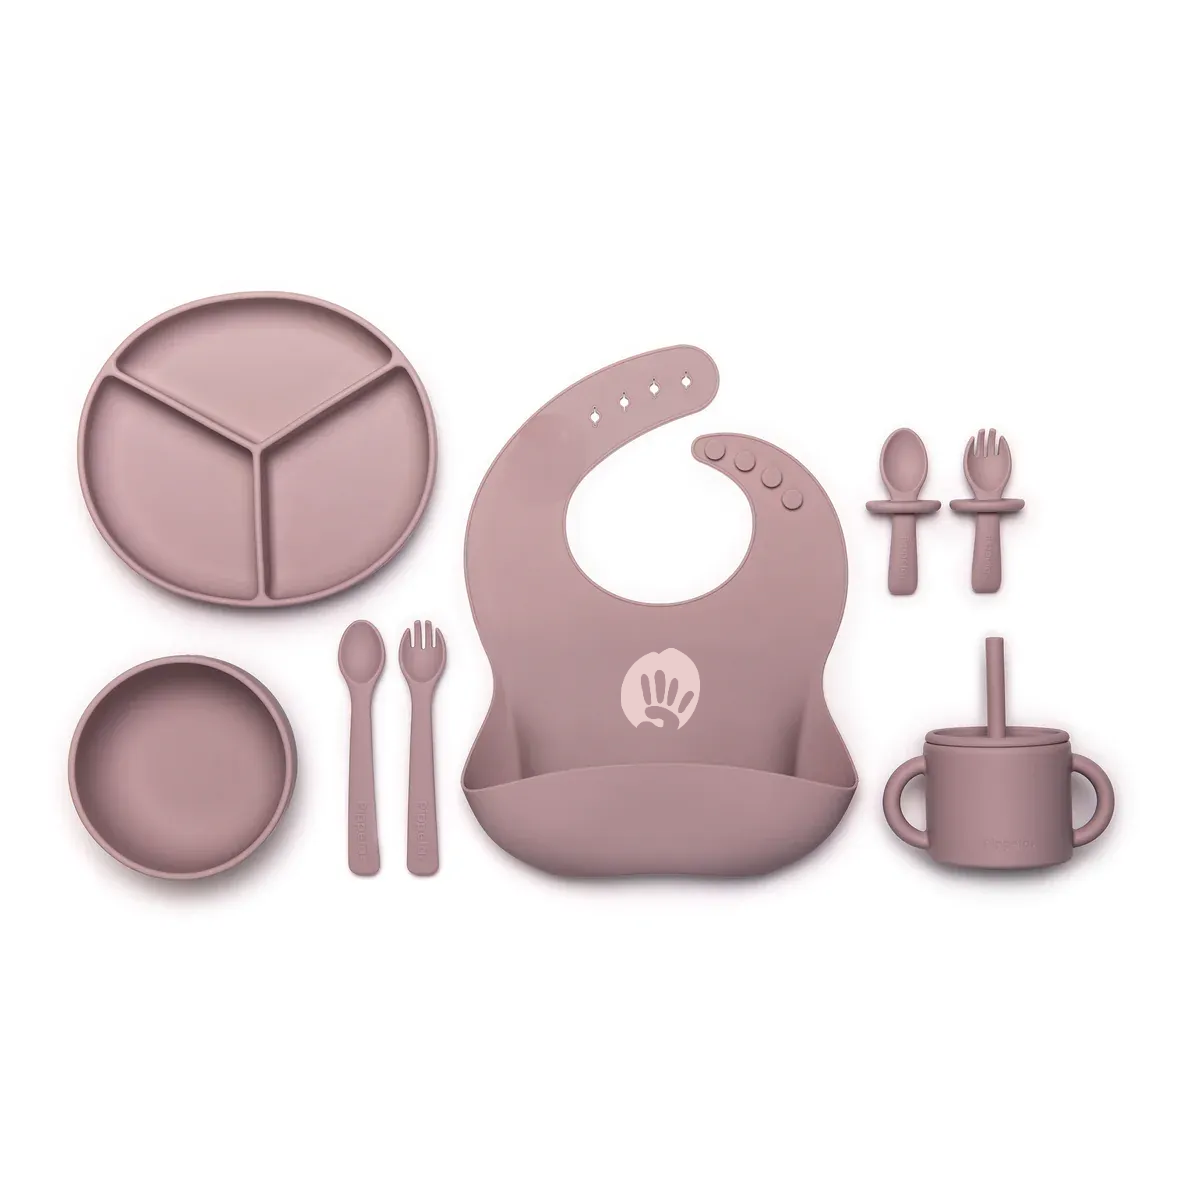 Bebko My First Feeding Set | Silicone Baby Weaning Set of 6 Pcs | Tableware Kit